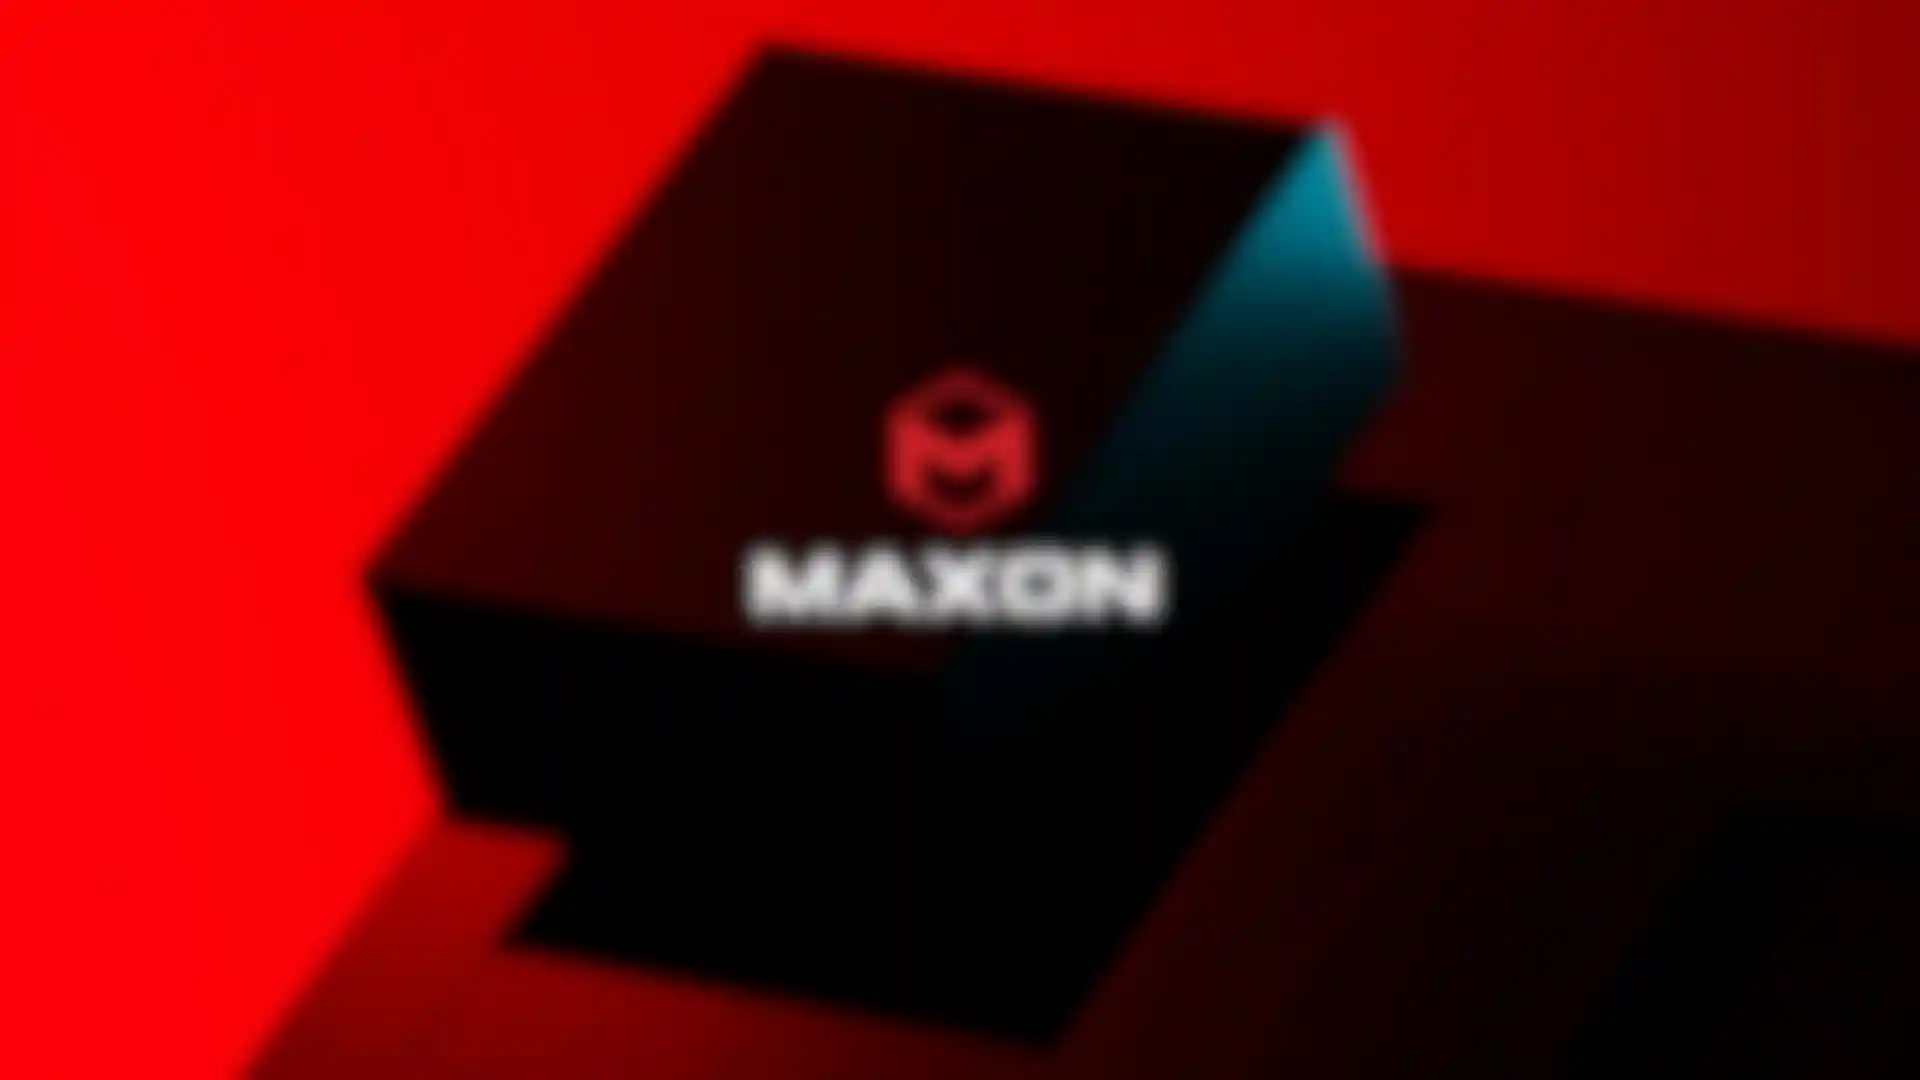 Maxon Presenta una Nueva Identidad Corporativa image